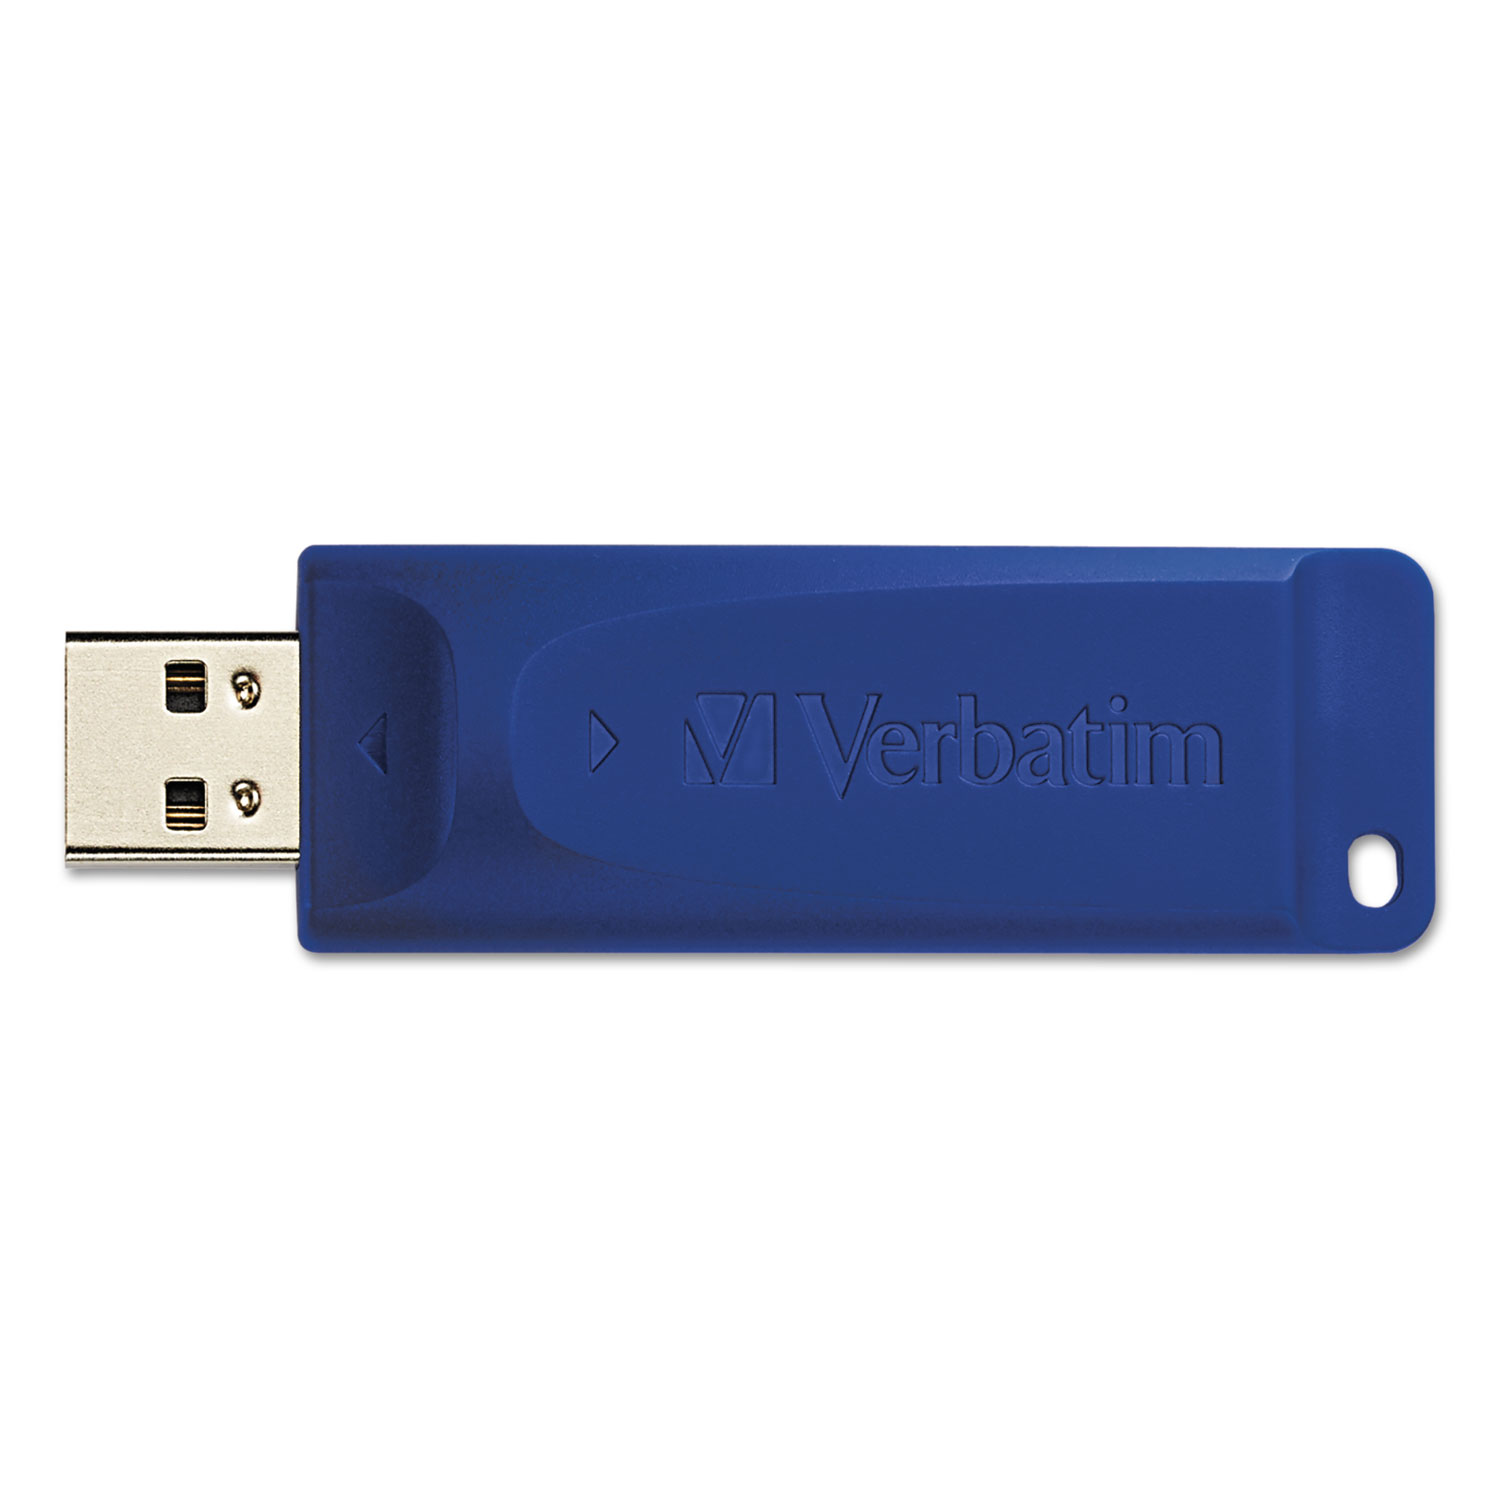 Classic USB 2.0 Flash Drive, 16GB, Blue